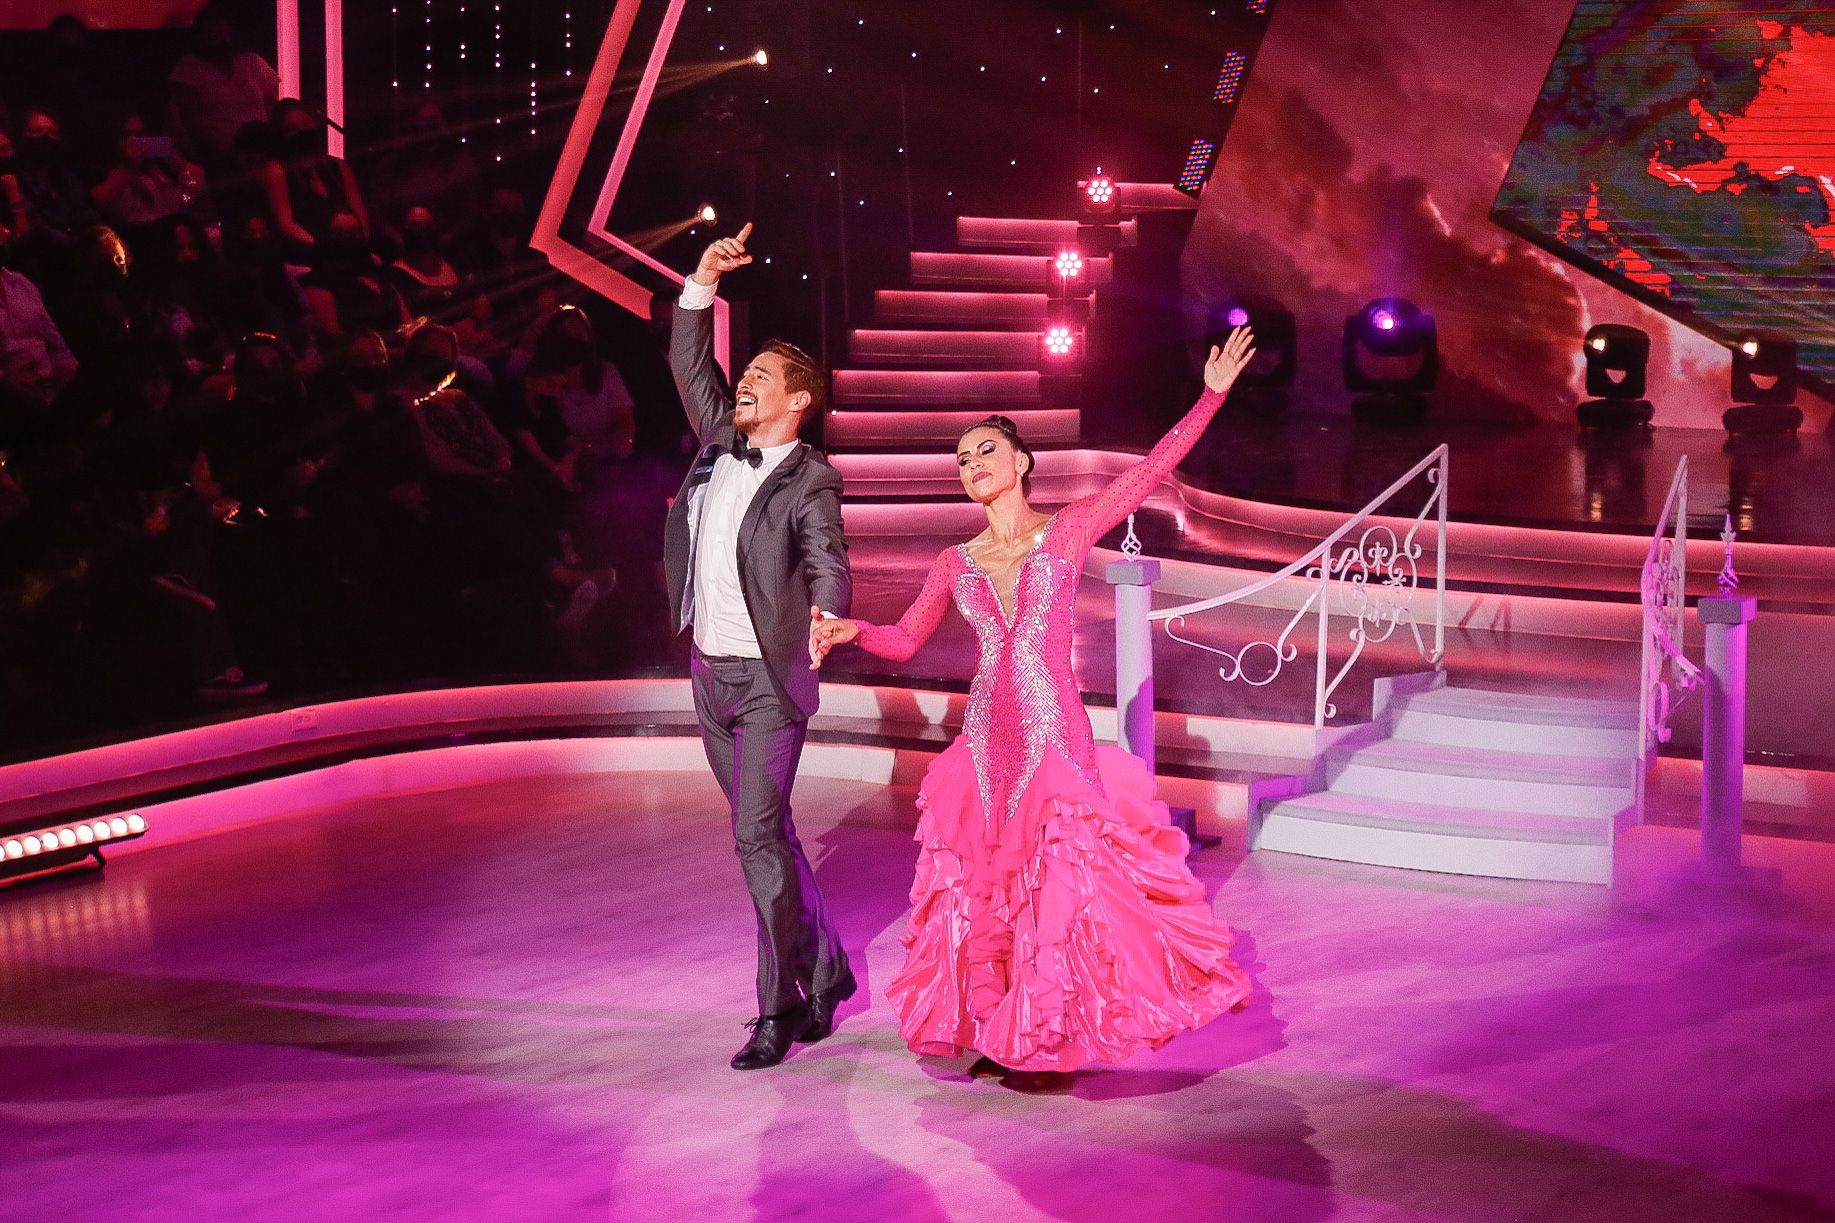 Nicole Aldana agradeció a su pareja de baile Javier Acuña por ayudarle durante todas las galas del concurso.